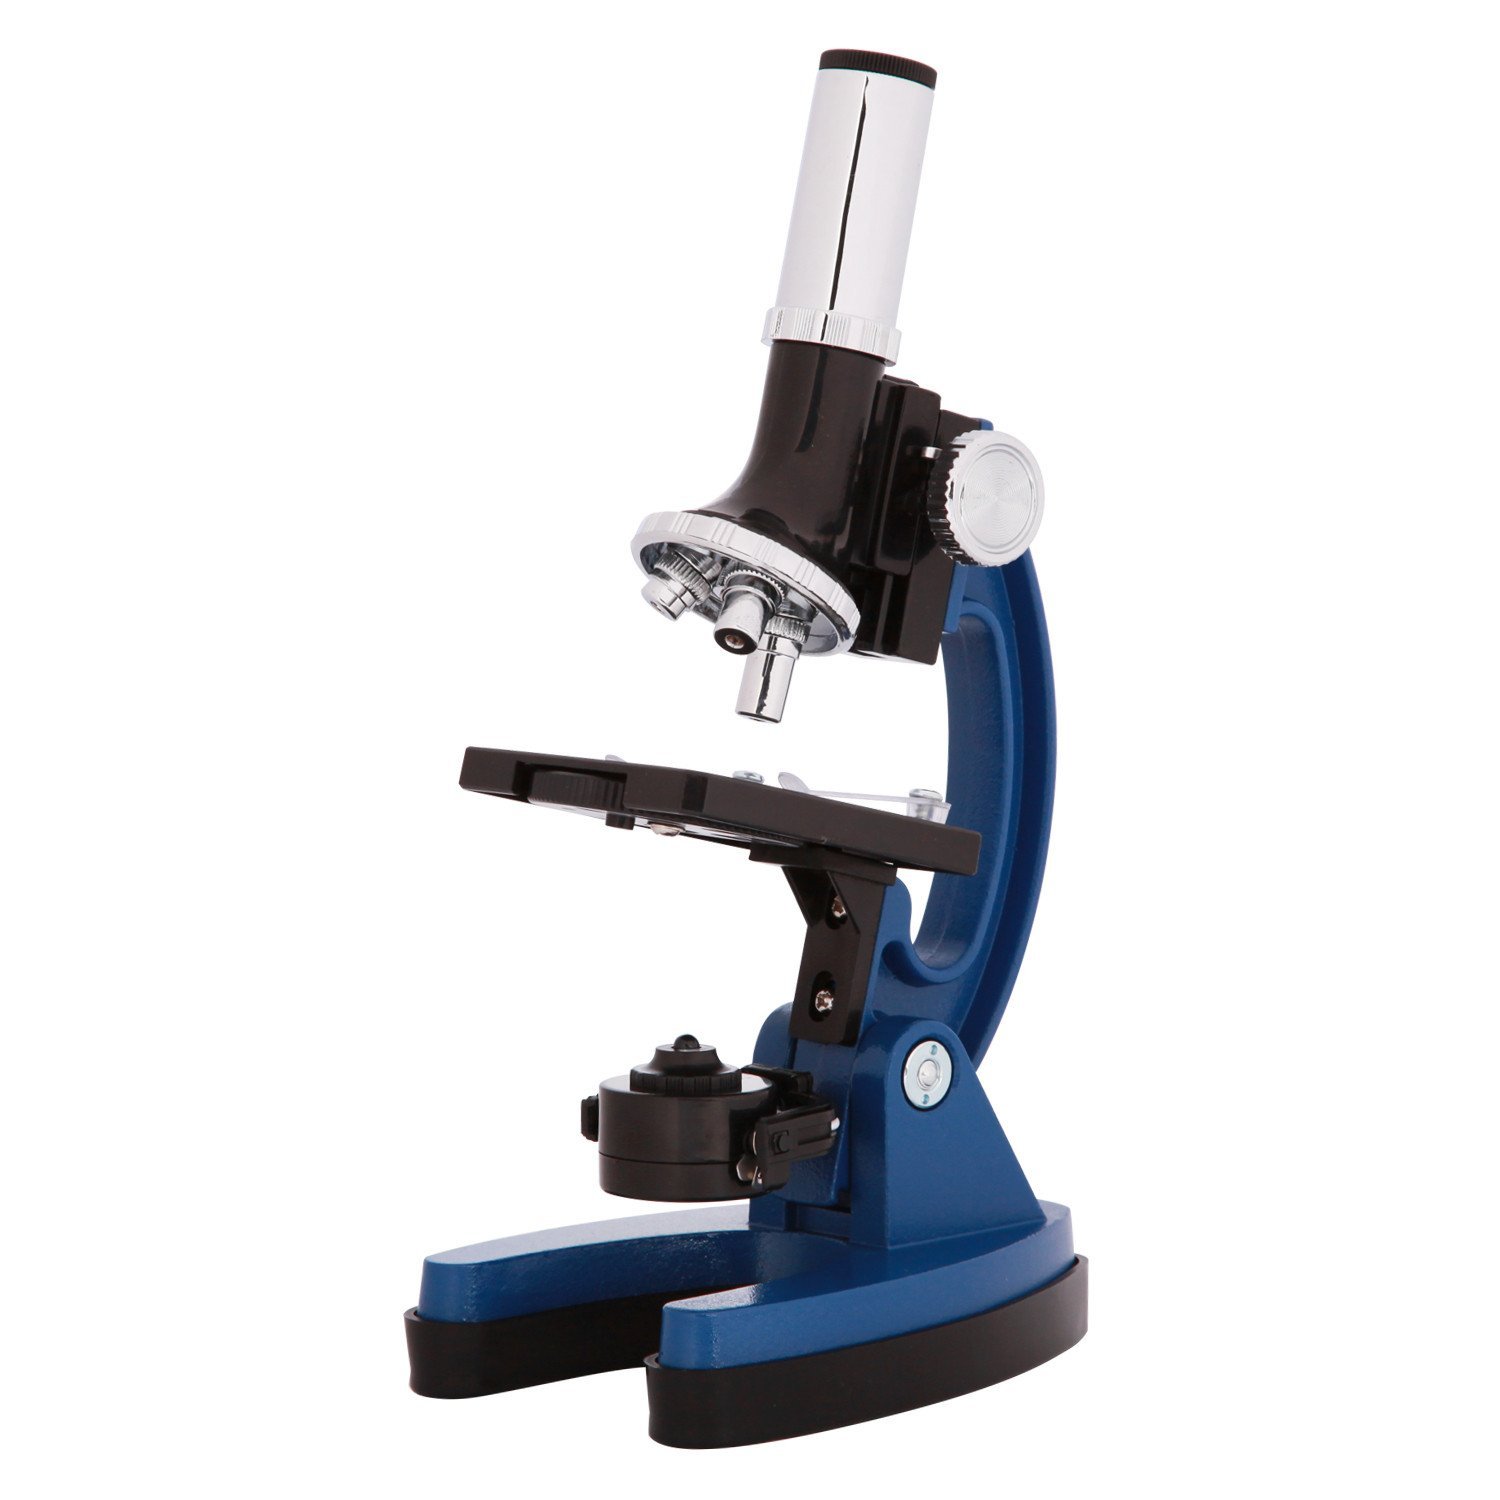 Explore One 900x Microscope – Explore Scientific USA